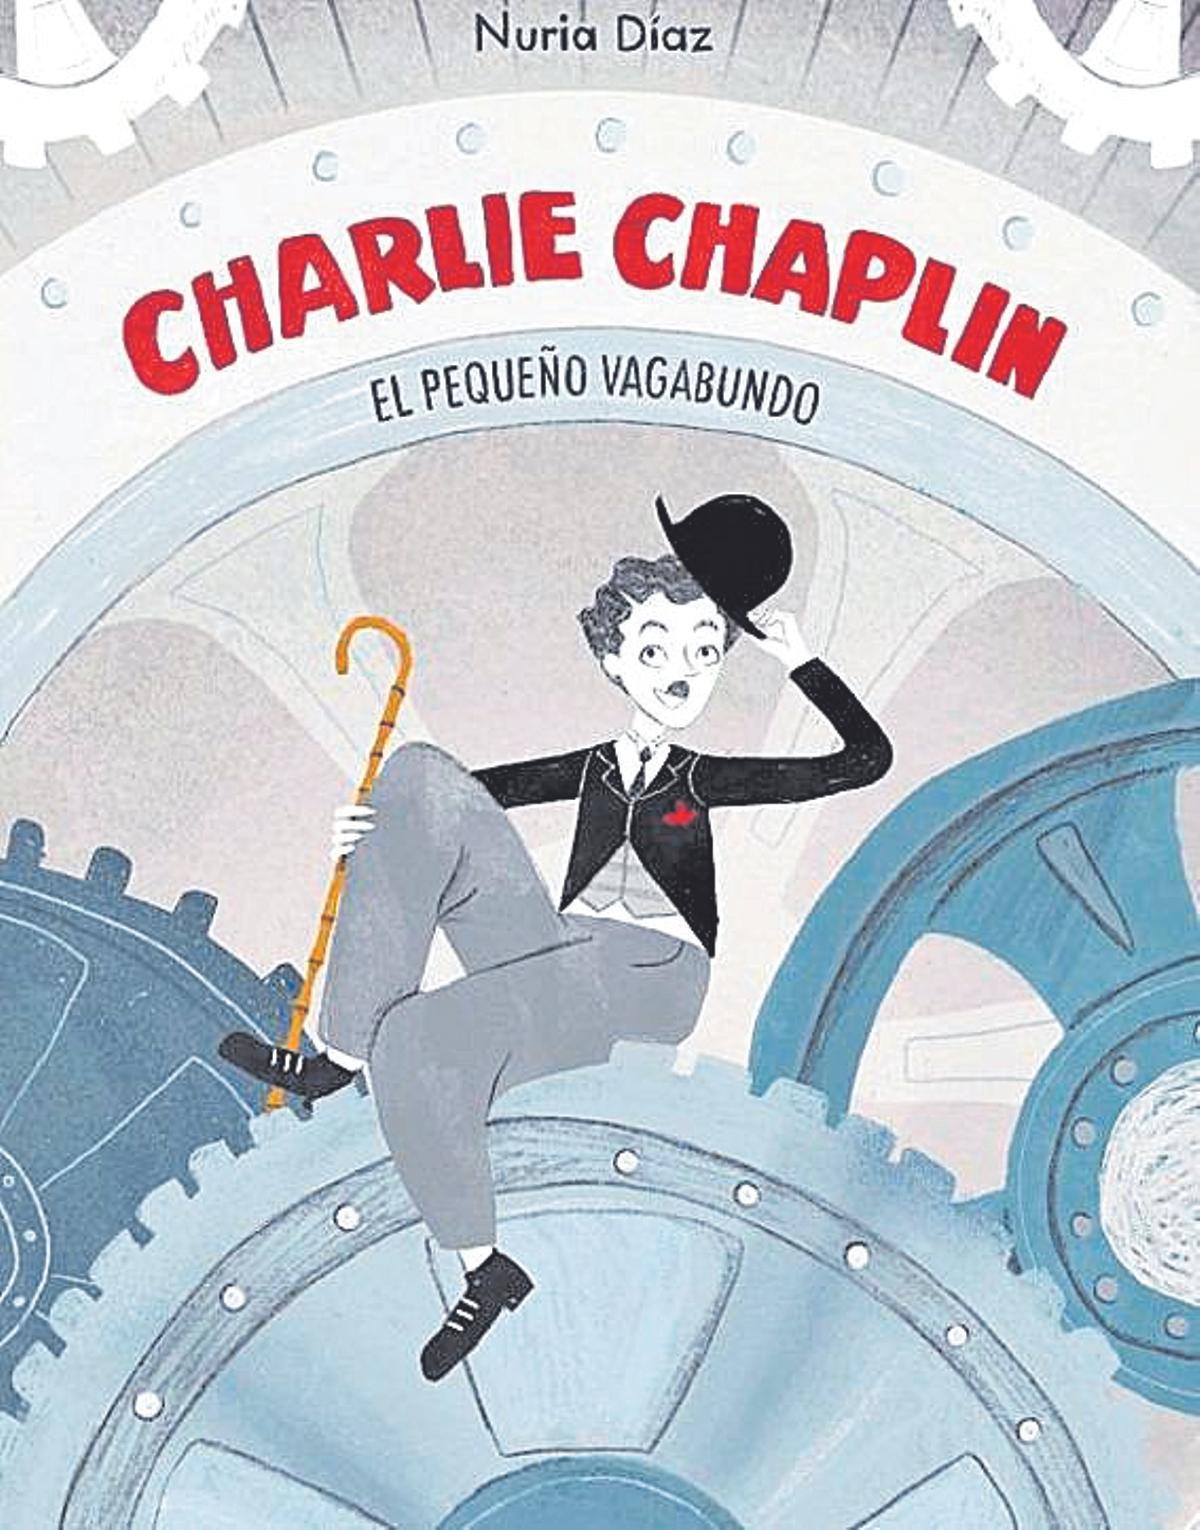 ‘Charlie Chaplin: El pequeño vagabundo’,